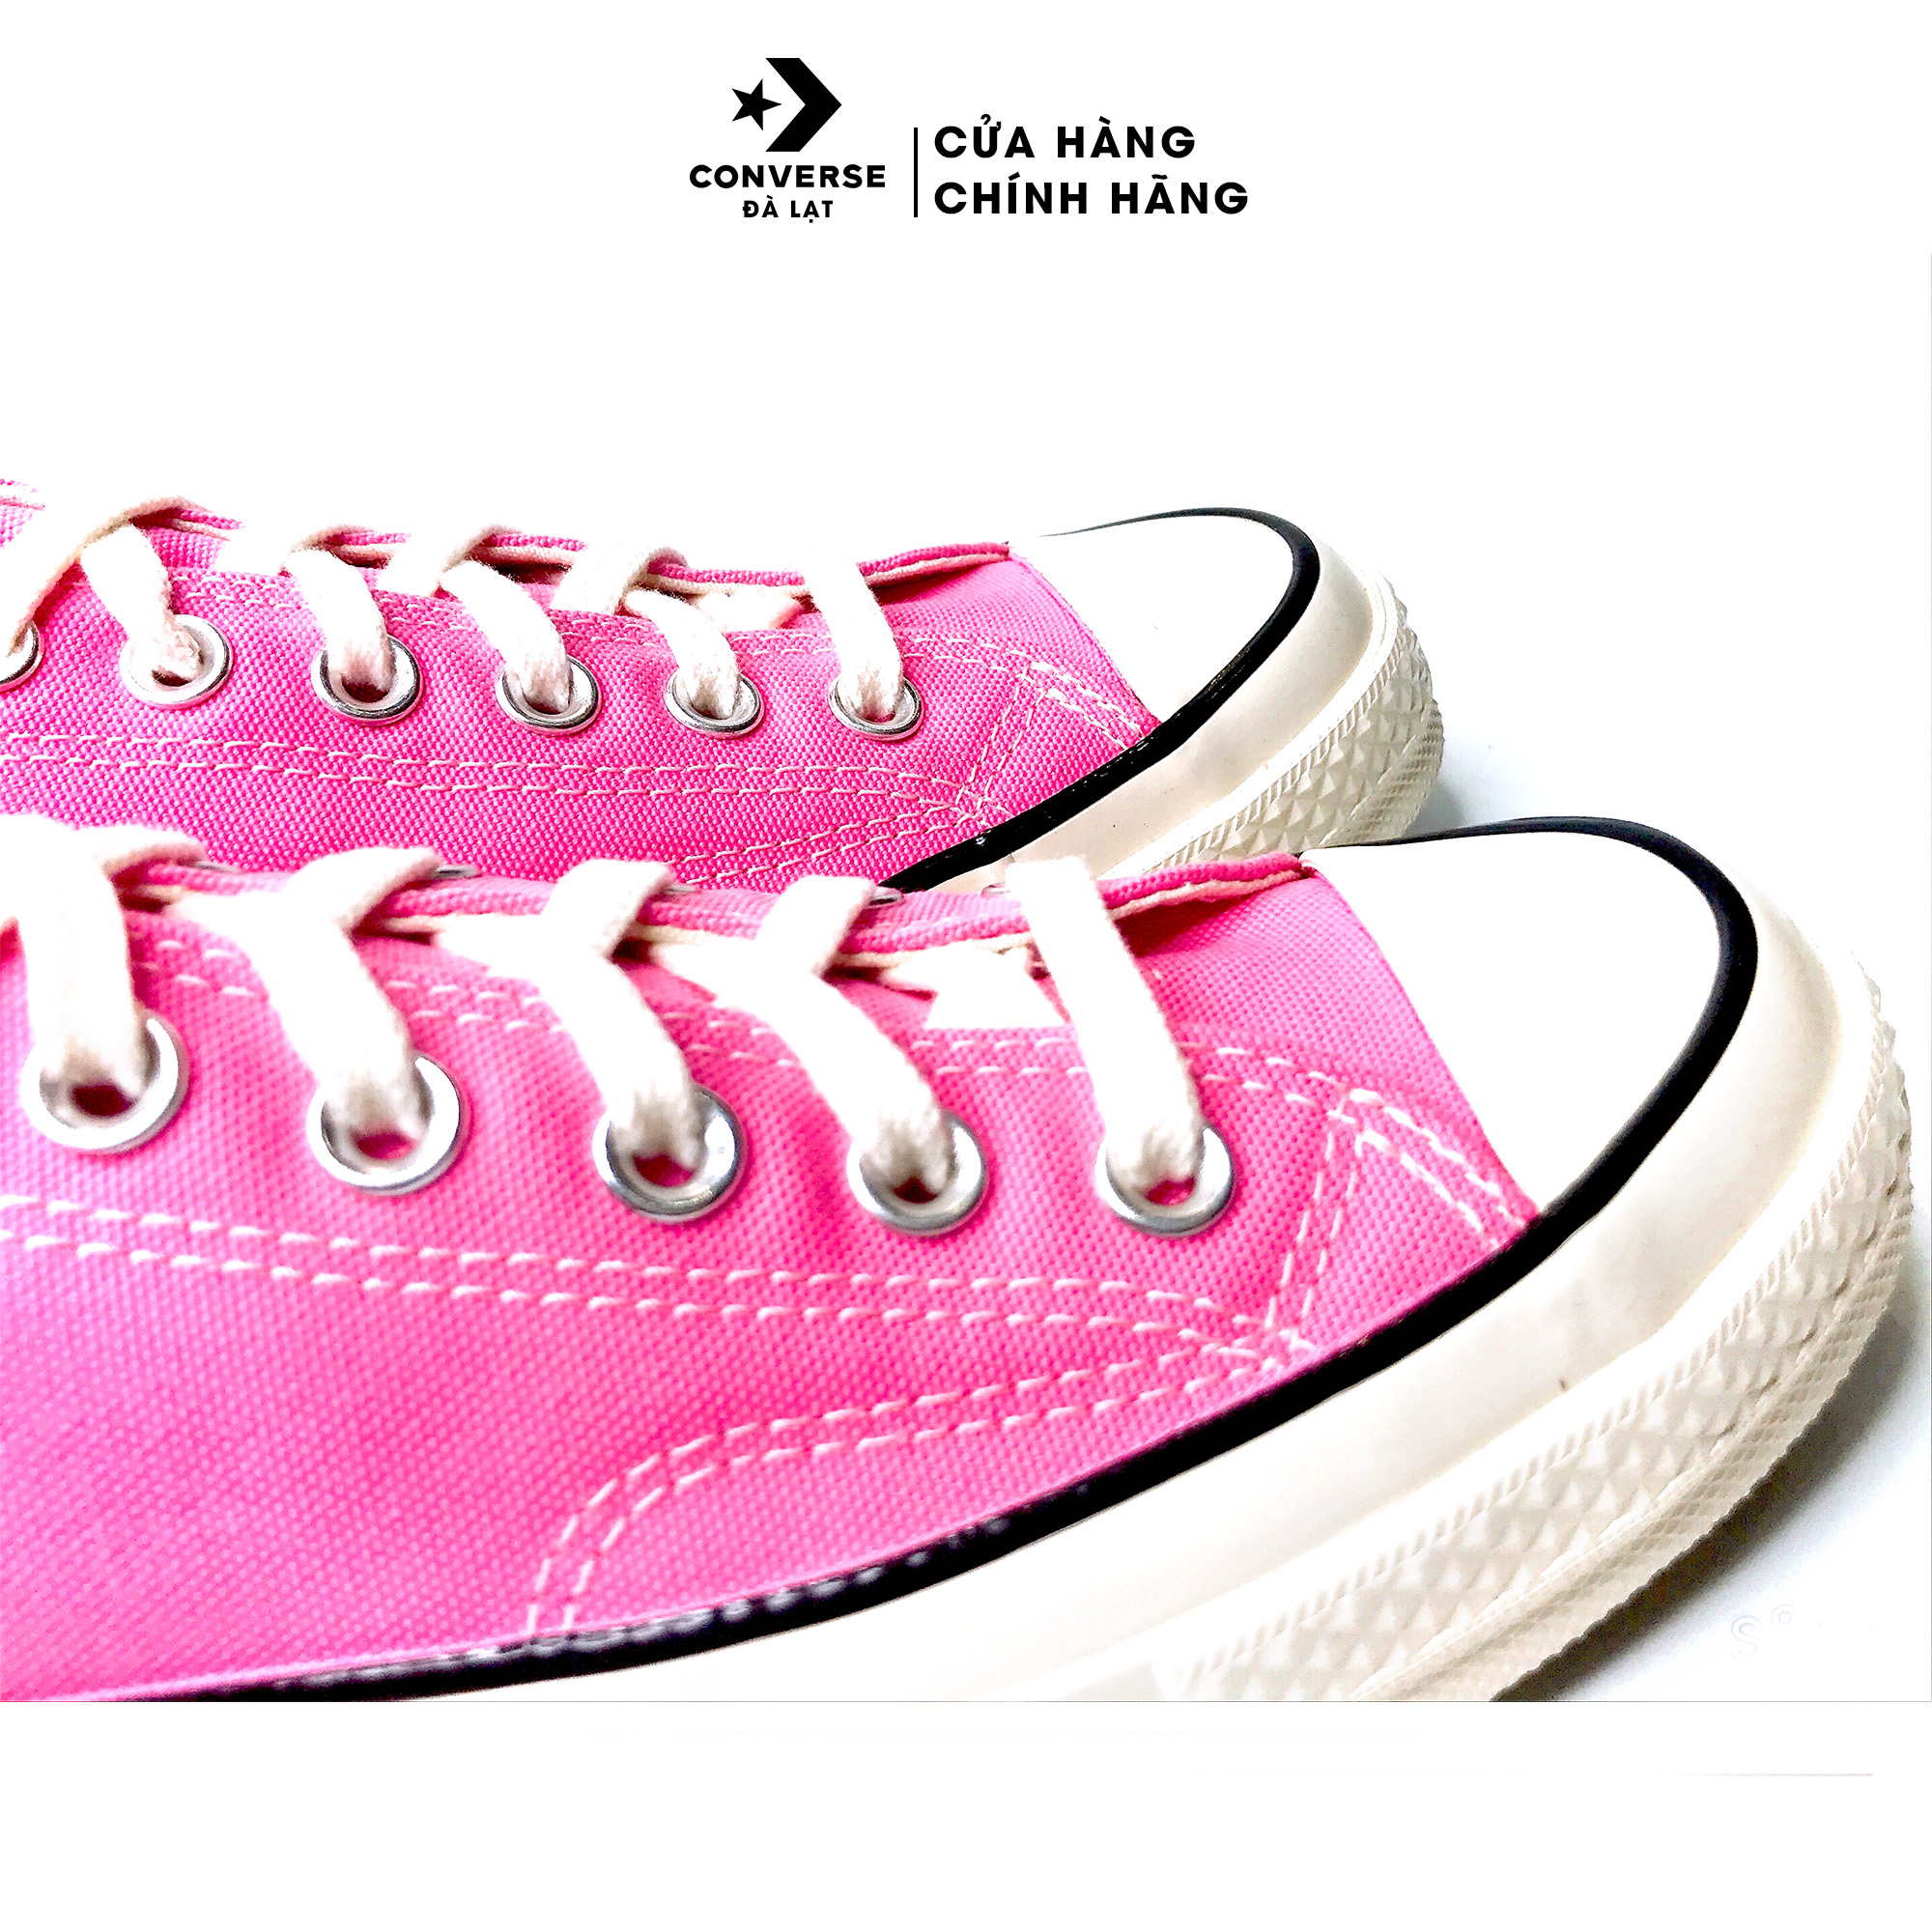 Giày Converse màu hồng Chuck 70 Recycled Rpet Canvas Sneakers thời trang năng động -172681C